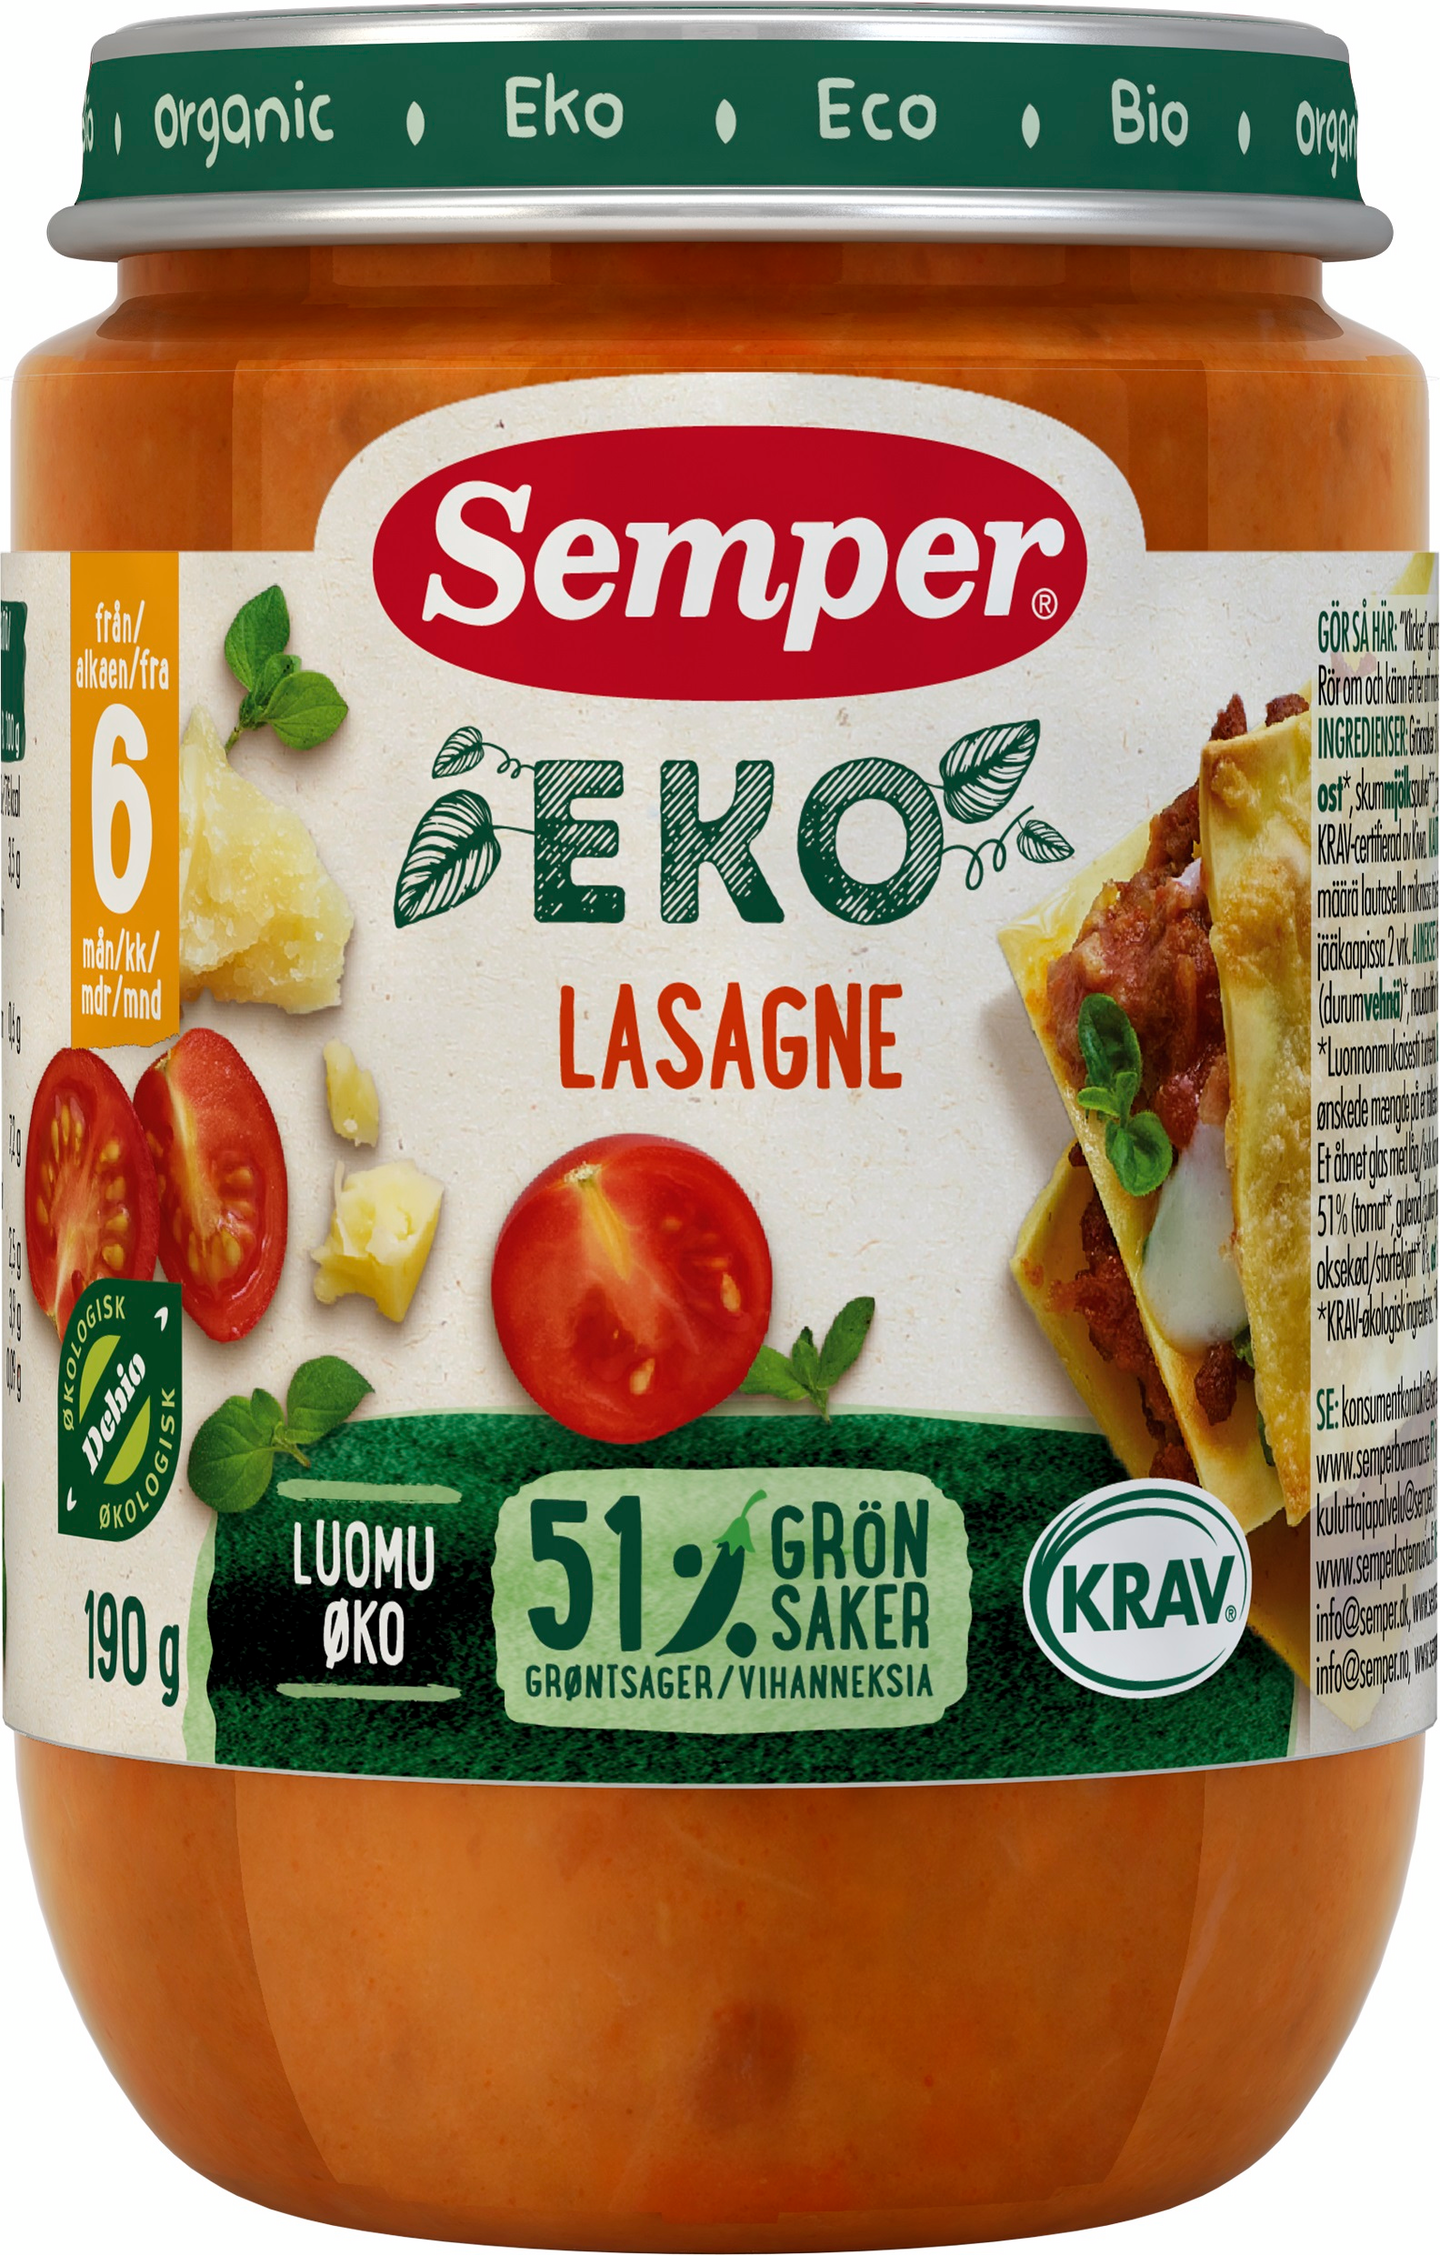 Semper EKO Lasagne 190g alk 6 kk Luomu — HoReCa-tukku Kespro